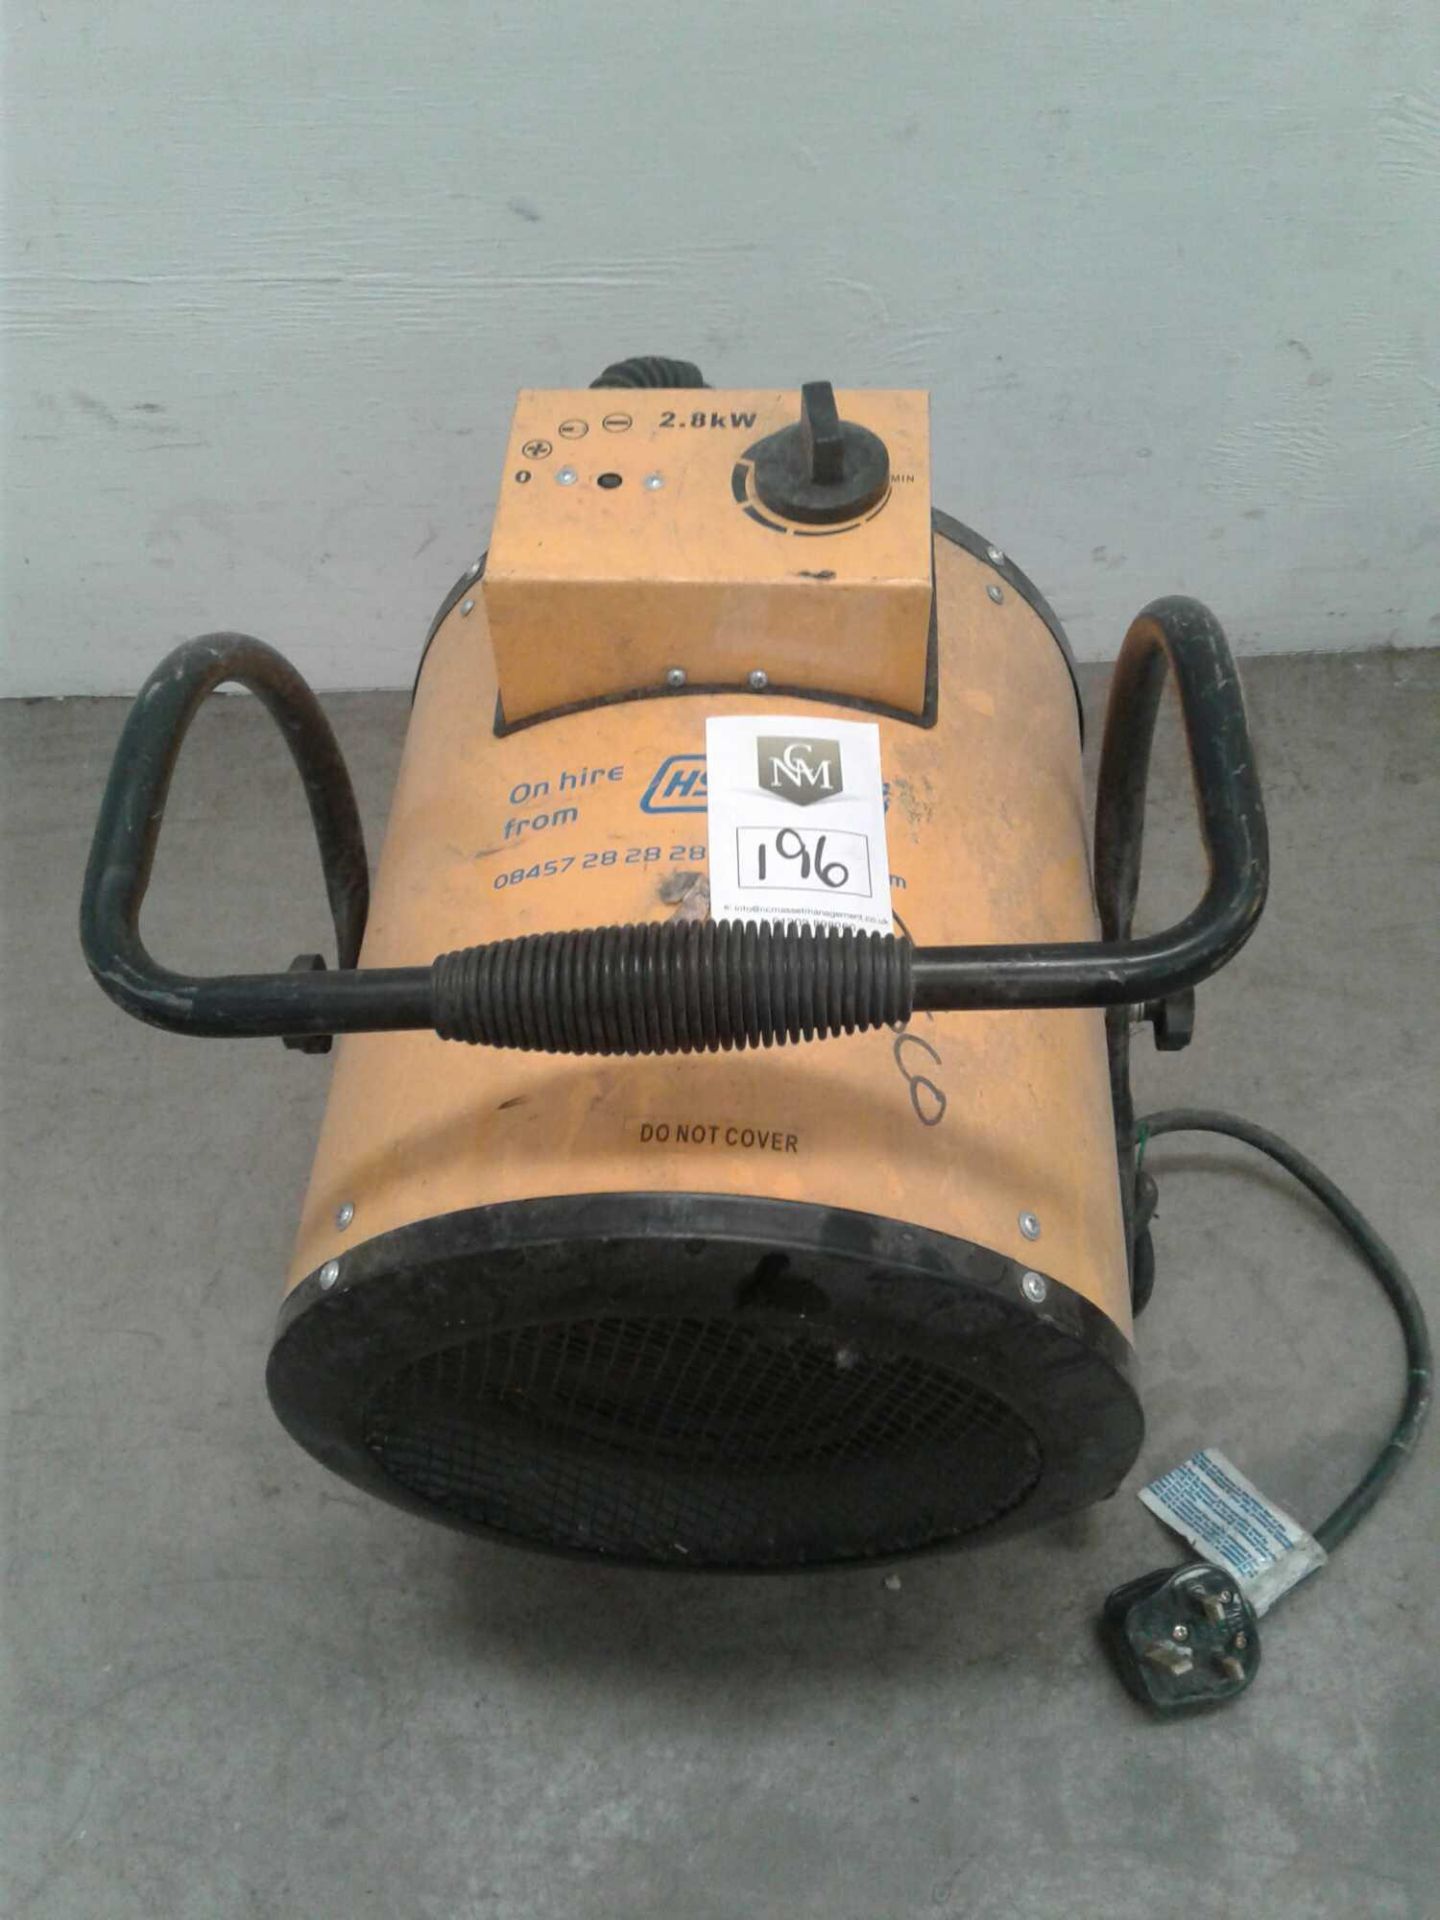 Fan heater 2.8 kw